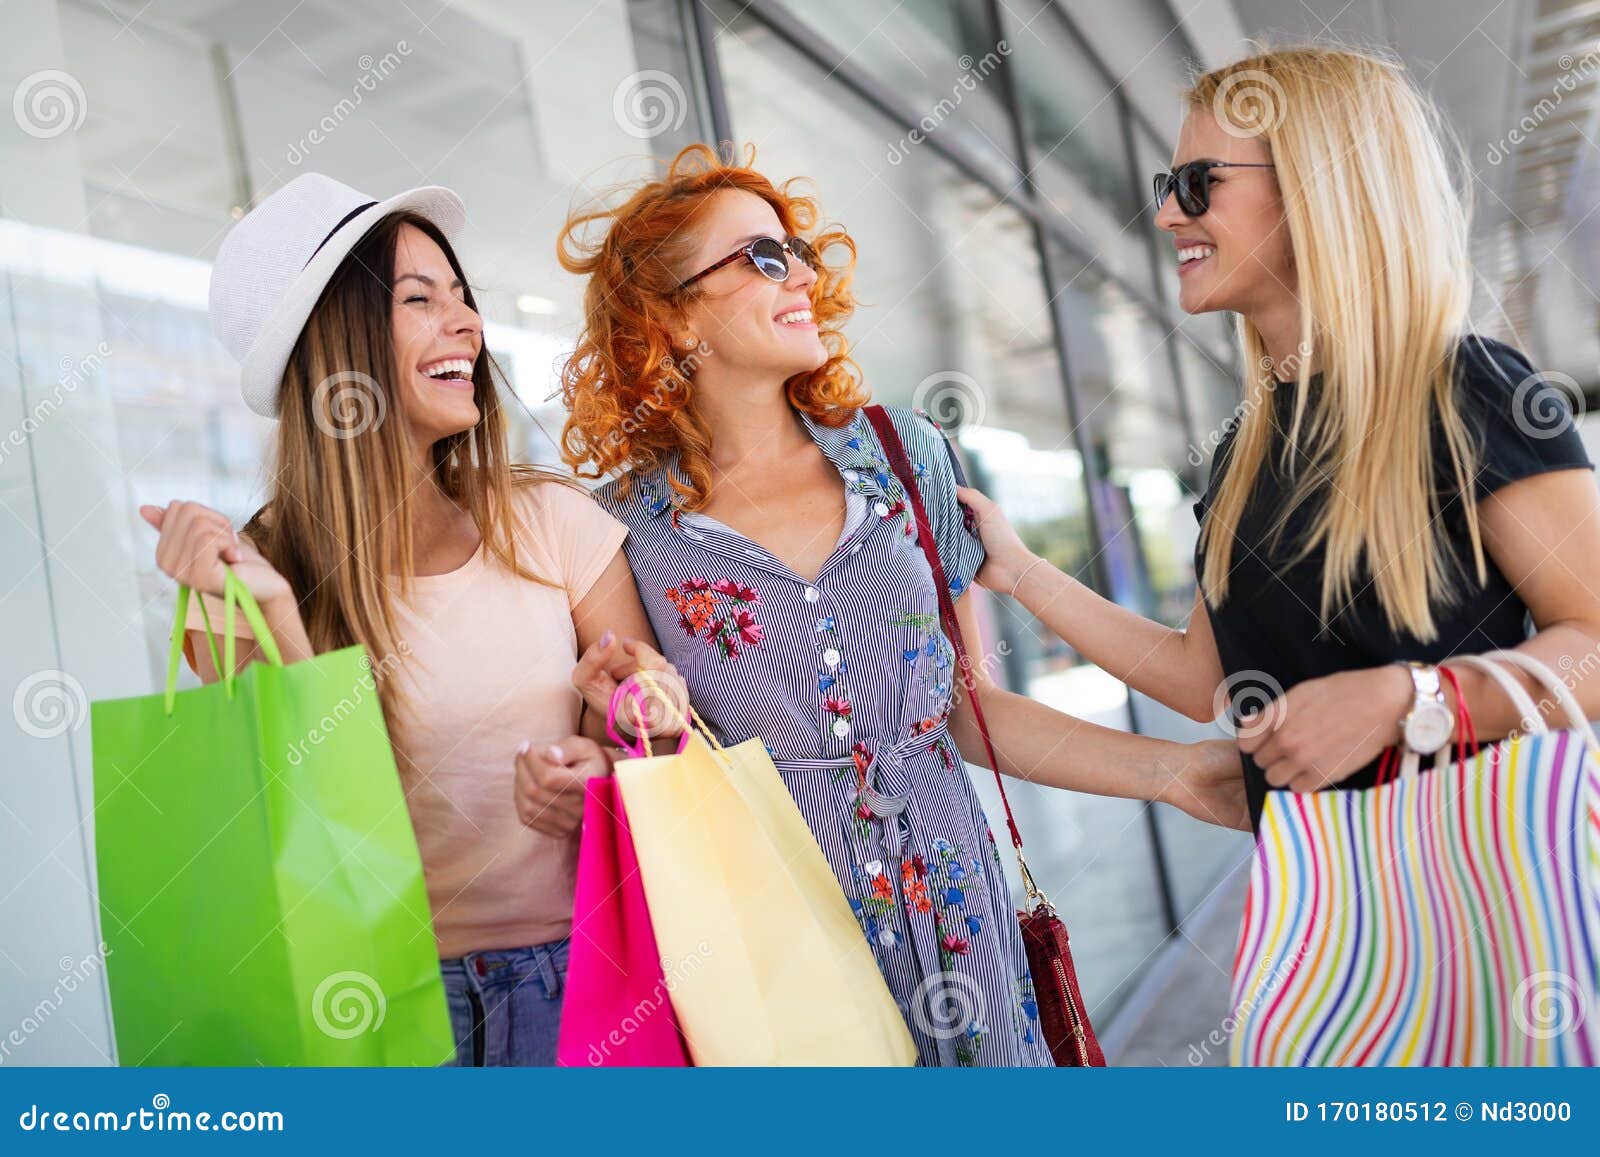 girl shopping travel